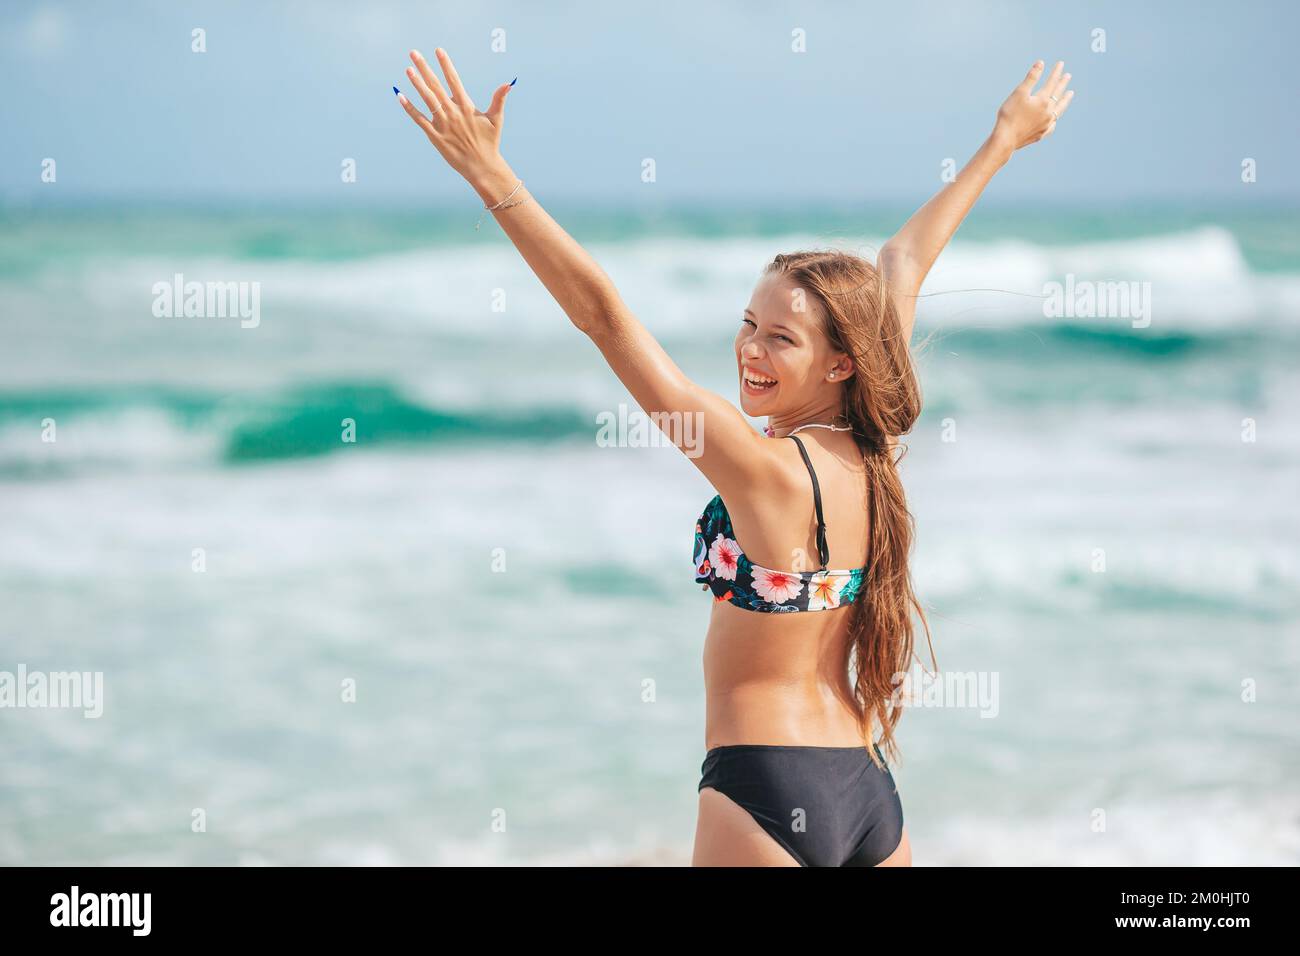 Adorabile ragazza slim in costume da bagno con una figura perfetta sulla spiaggia Foto Stock